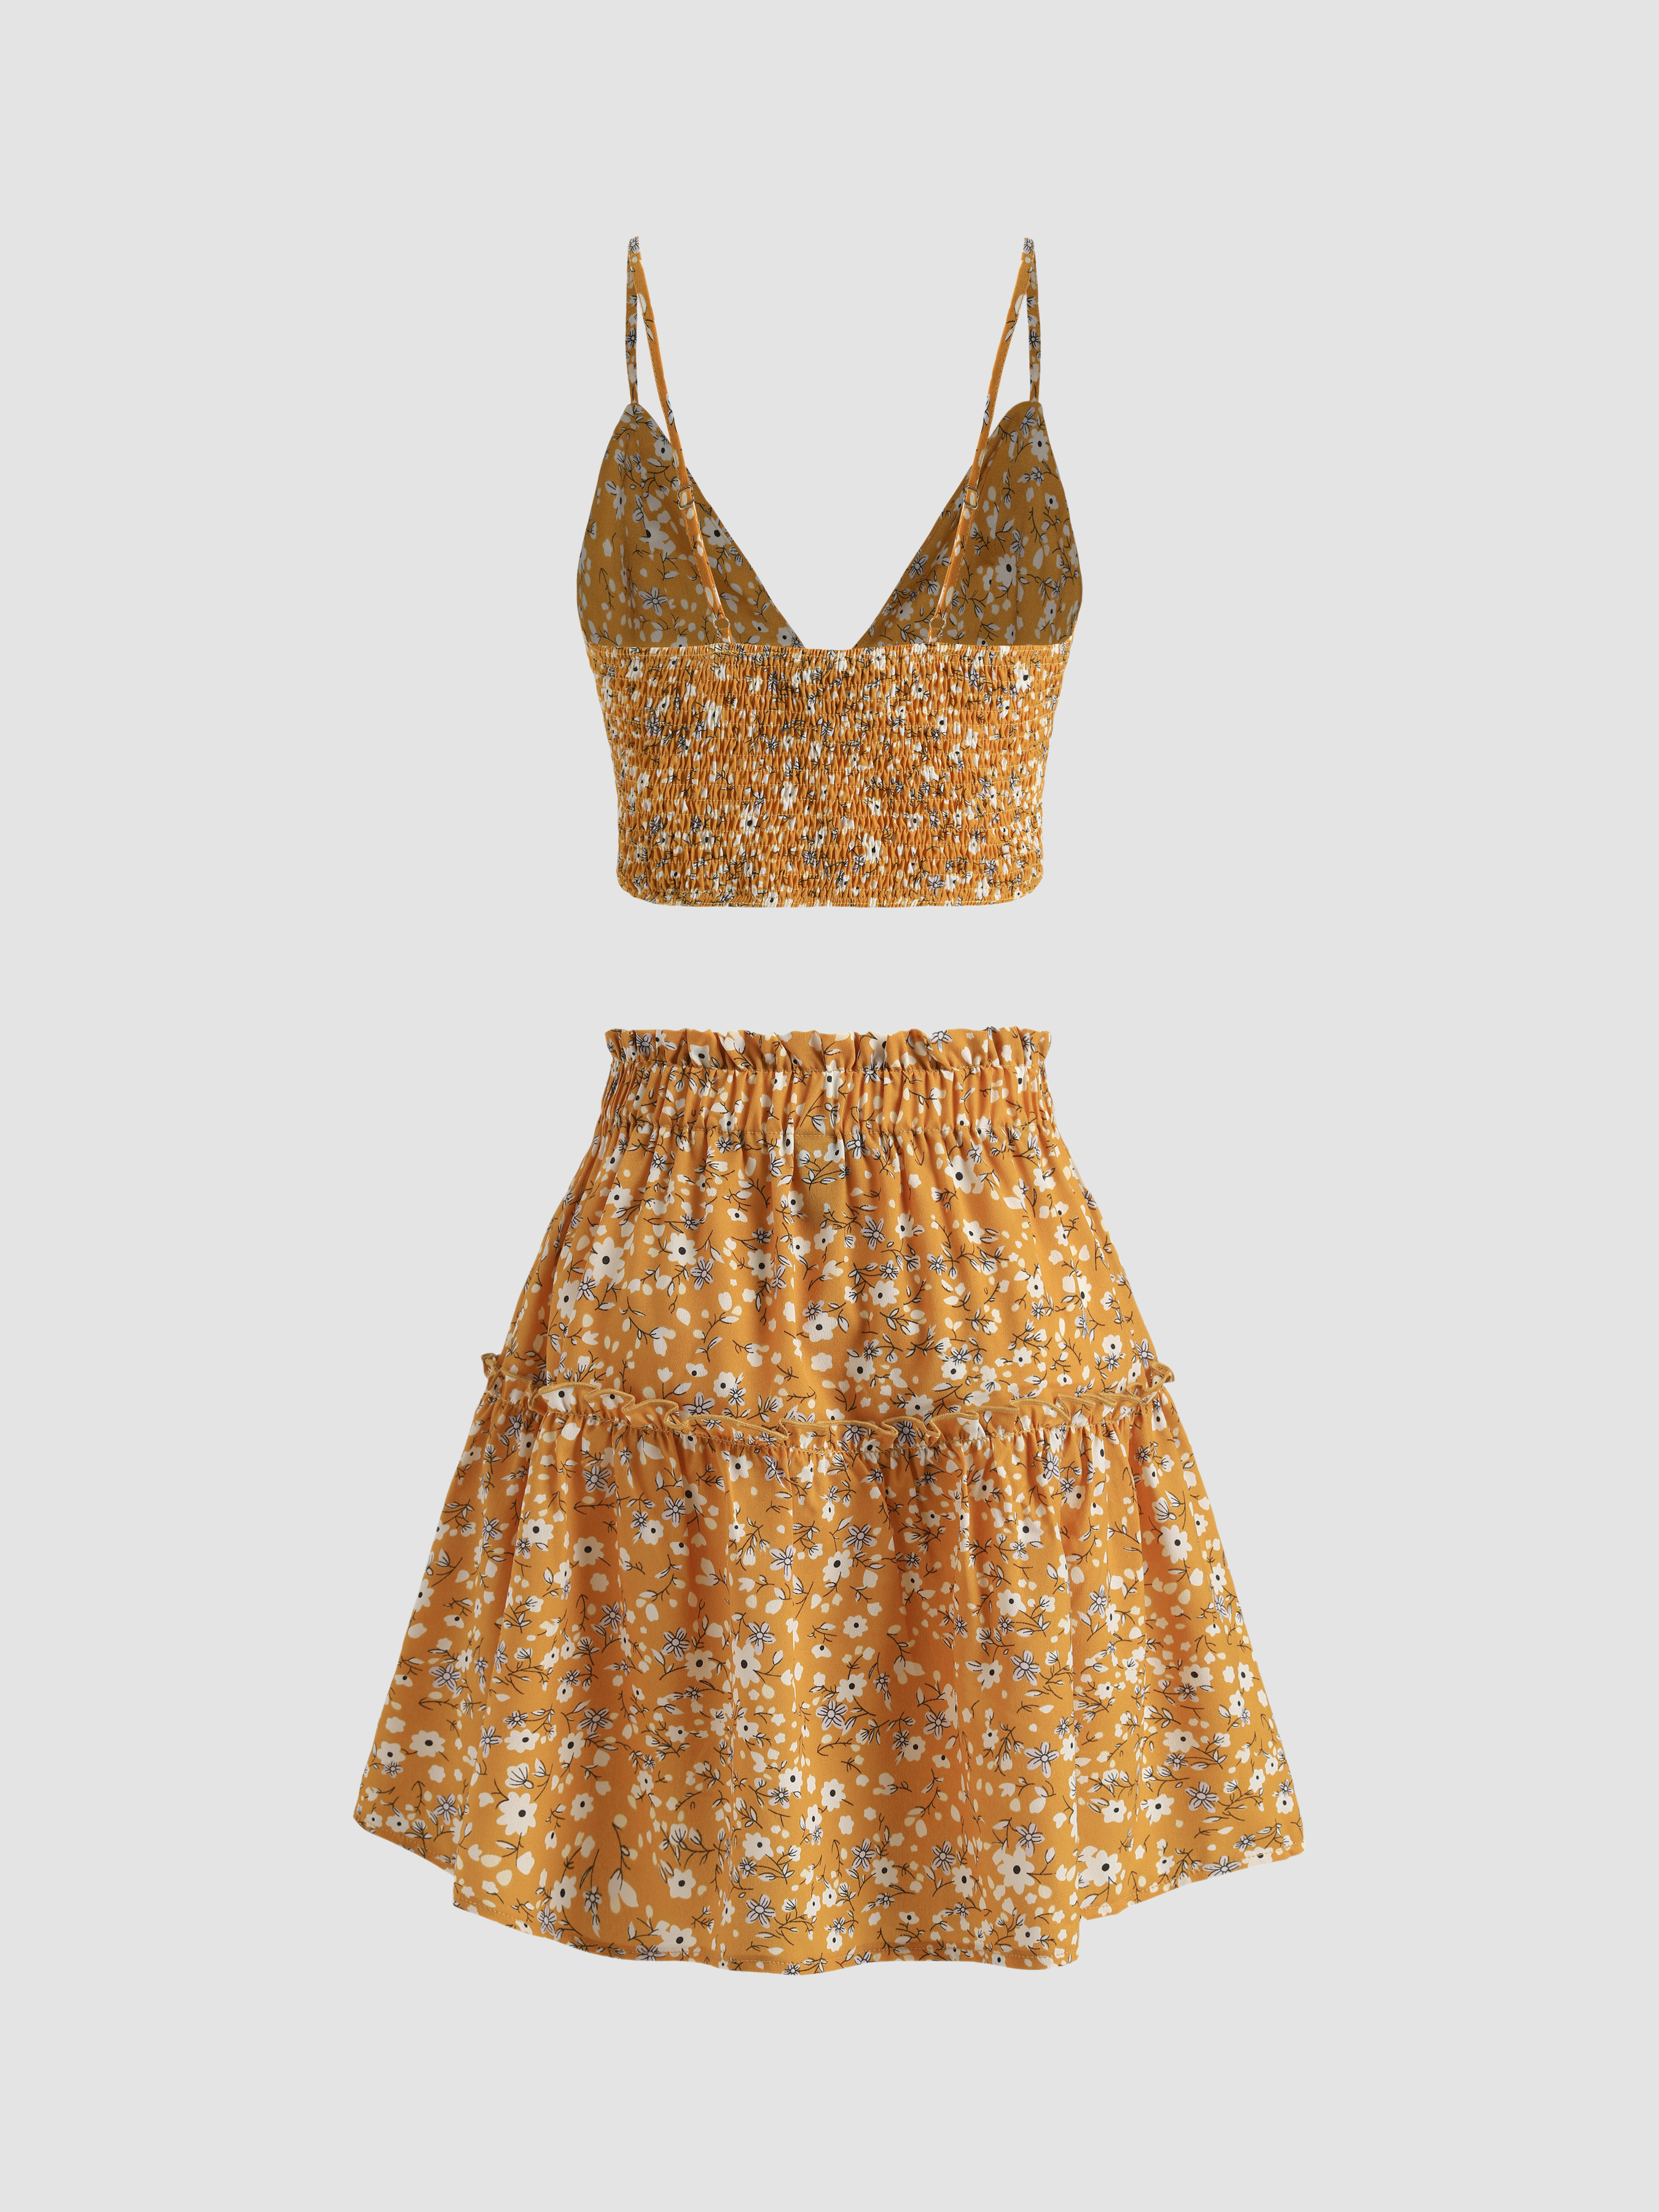 Cider Tank Floral Skirt & Set Top - Ditsy